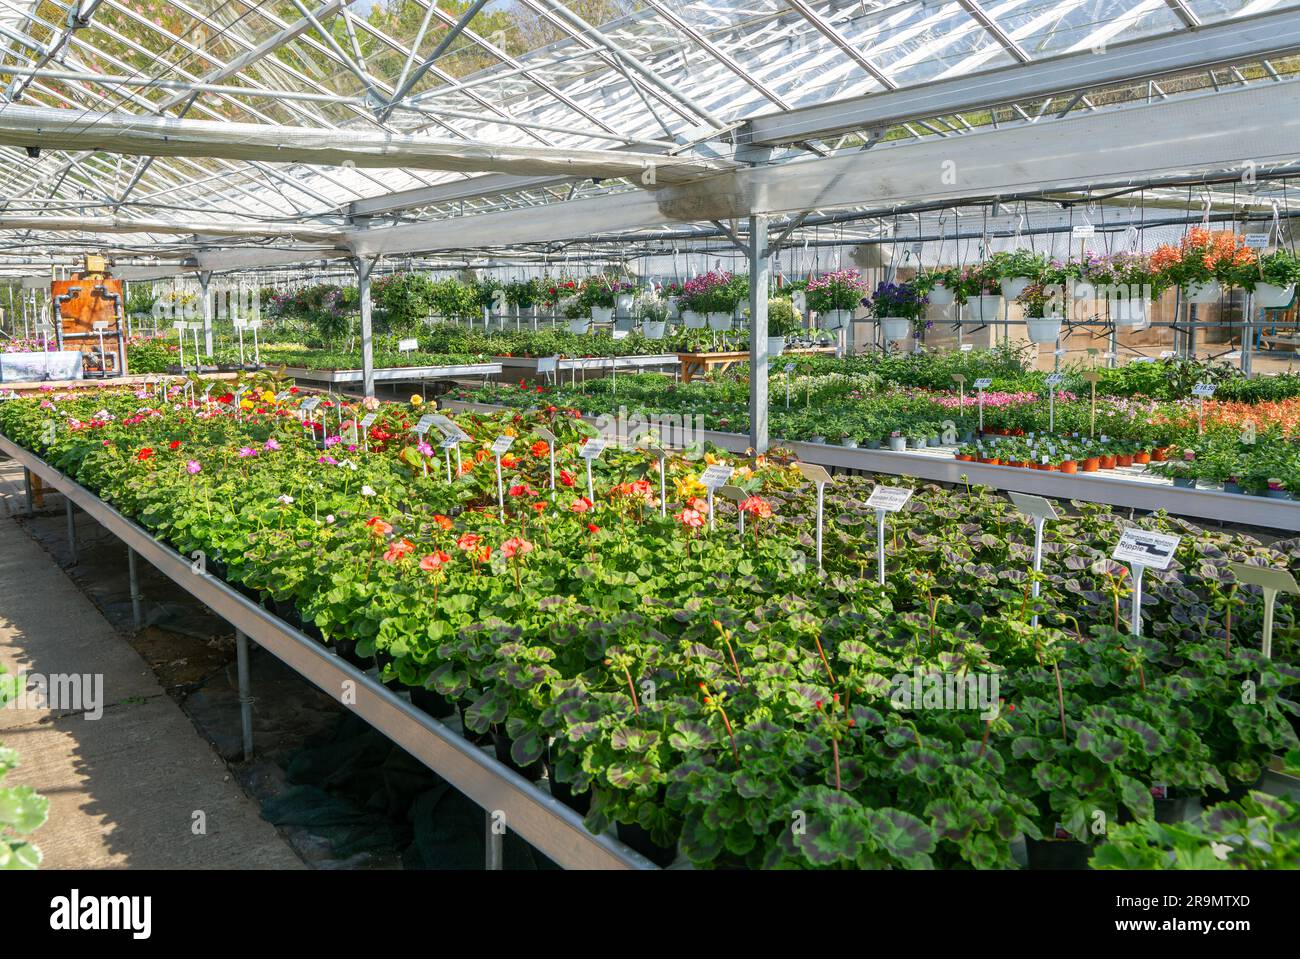 Plantas de geranio en maceta en exhibición dentro de invernadero de vivero de plantas, Ladybird Nurseries, Snape, Suffolk, Inglaterra, REINO UNIDO Foto de stock